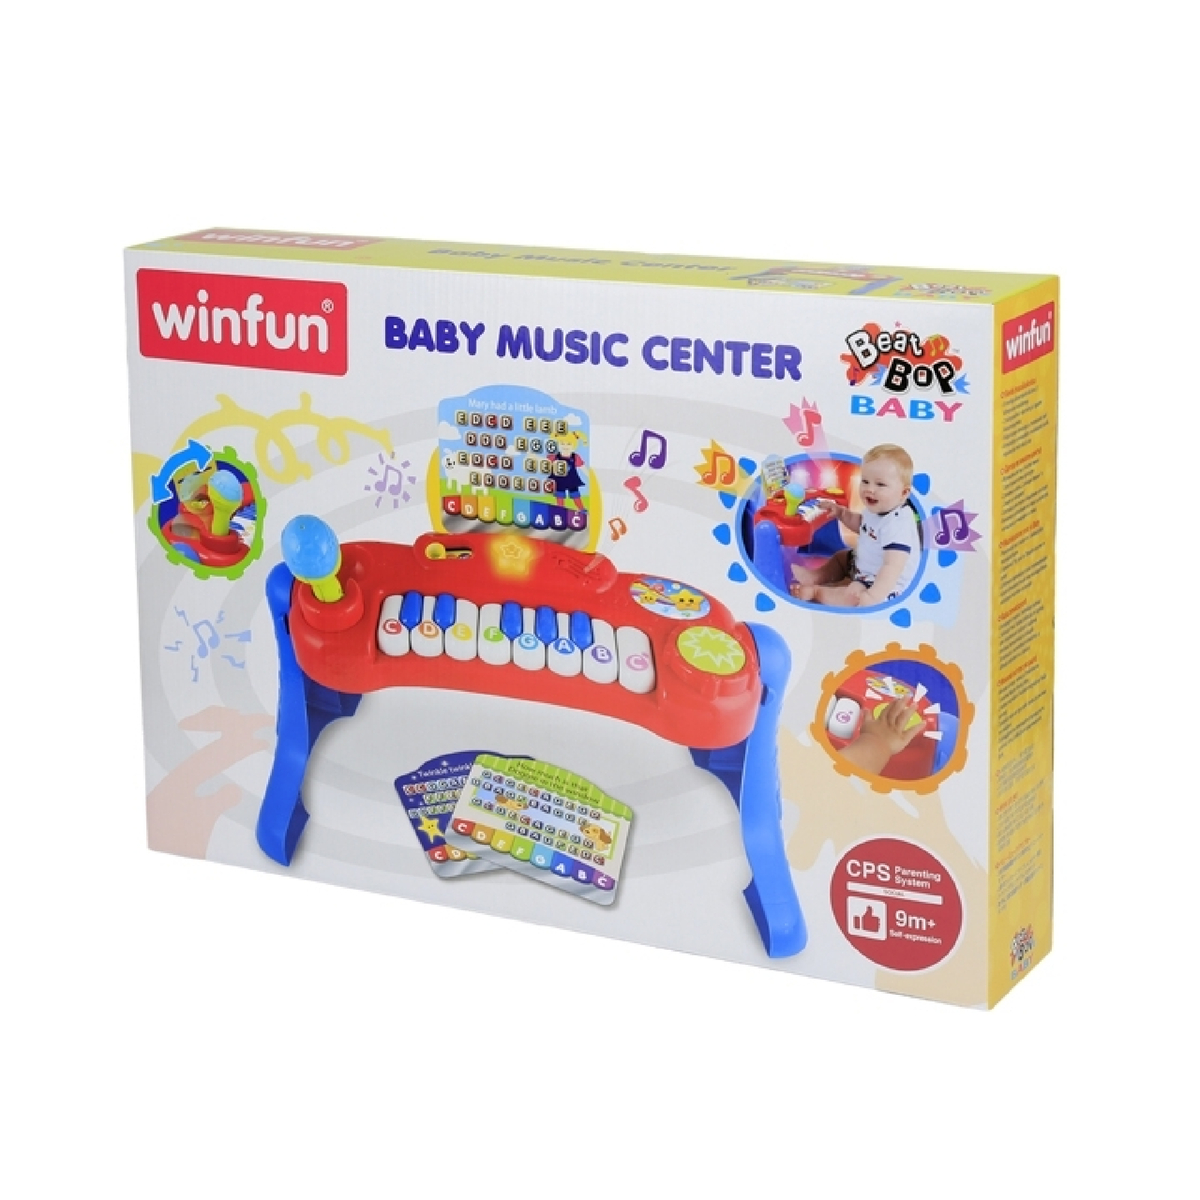 Winfun Baby Music Center, 002016